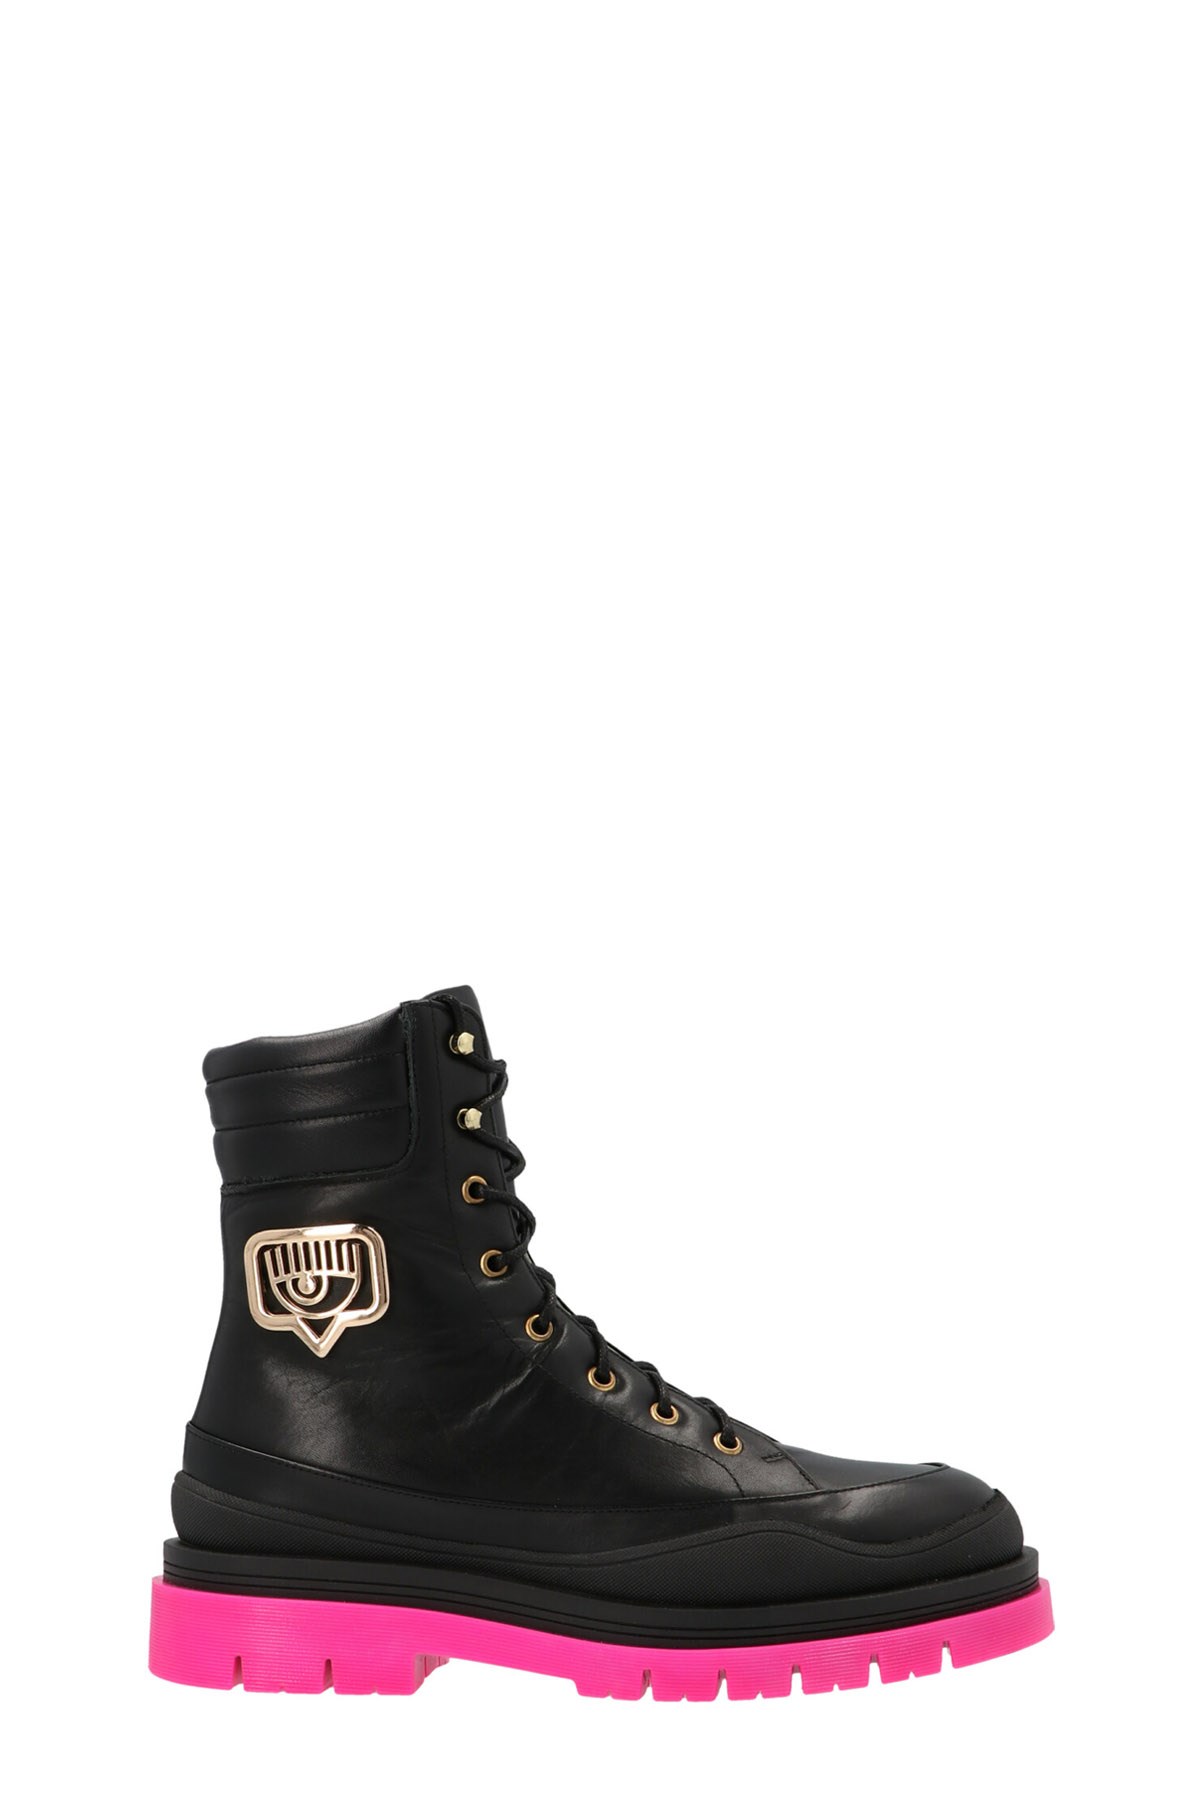 CHIARA FERRAGNI BRAND Leather Combat Boots